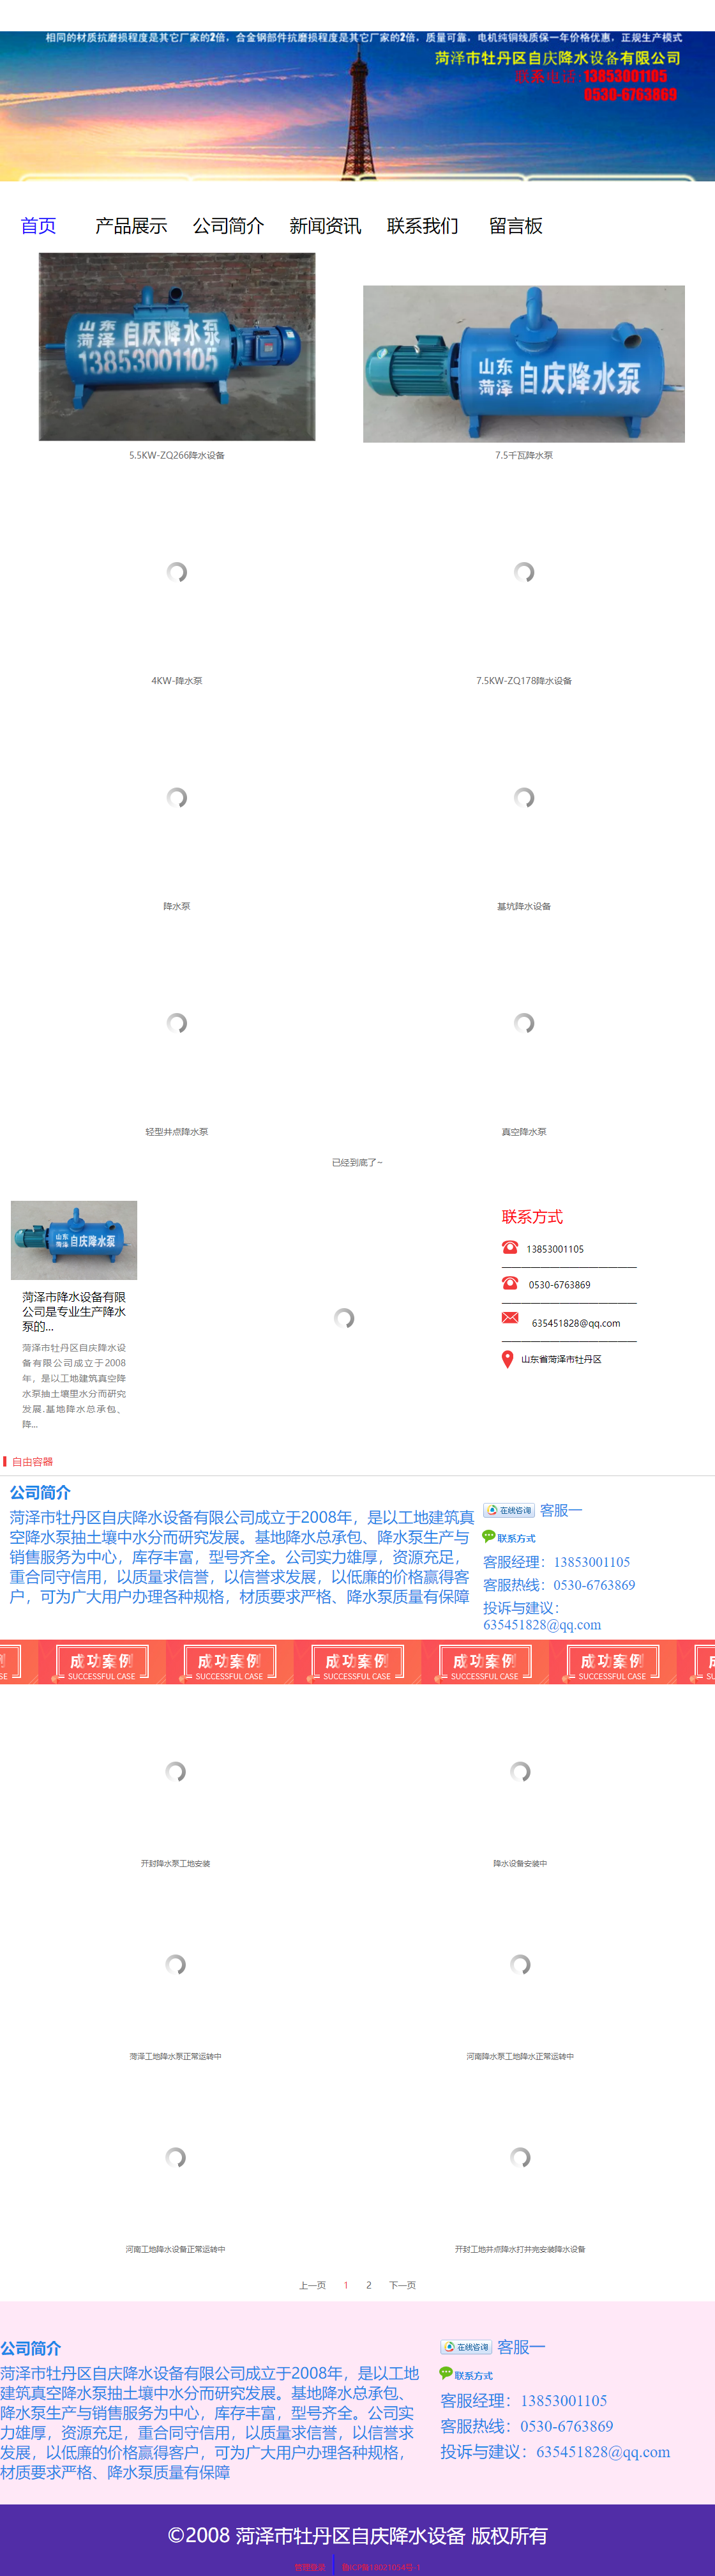 菏泽市牡丹区自庆机械设备有限公司网站案例